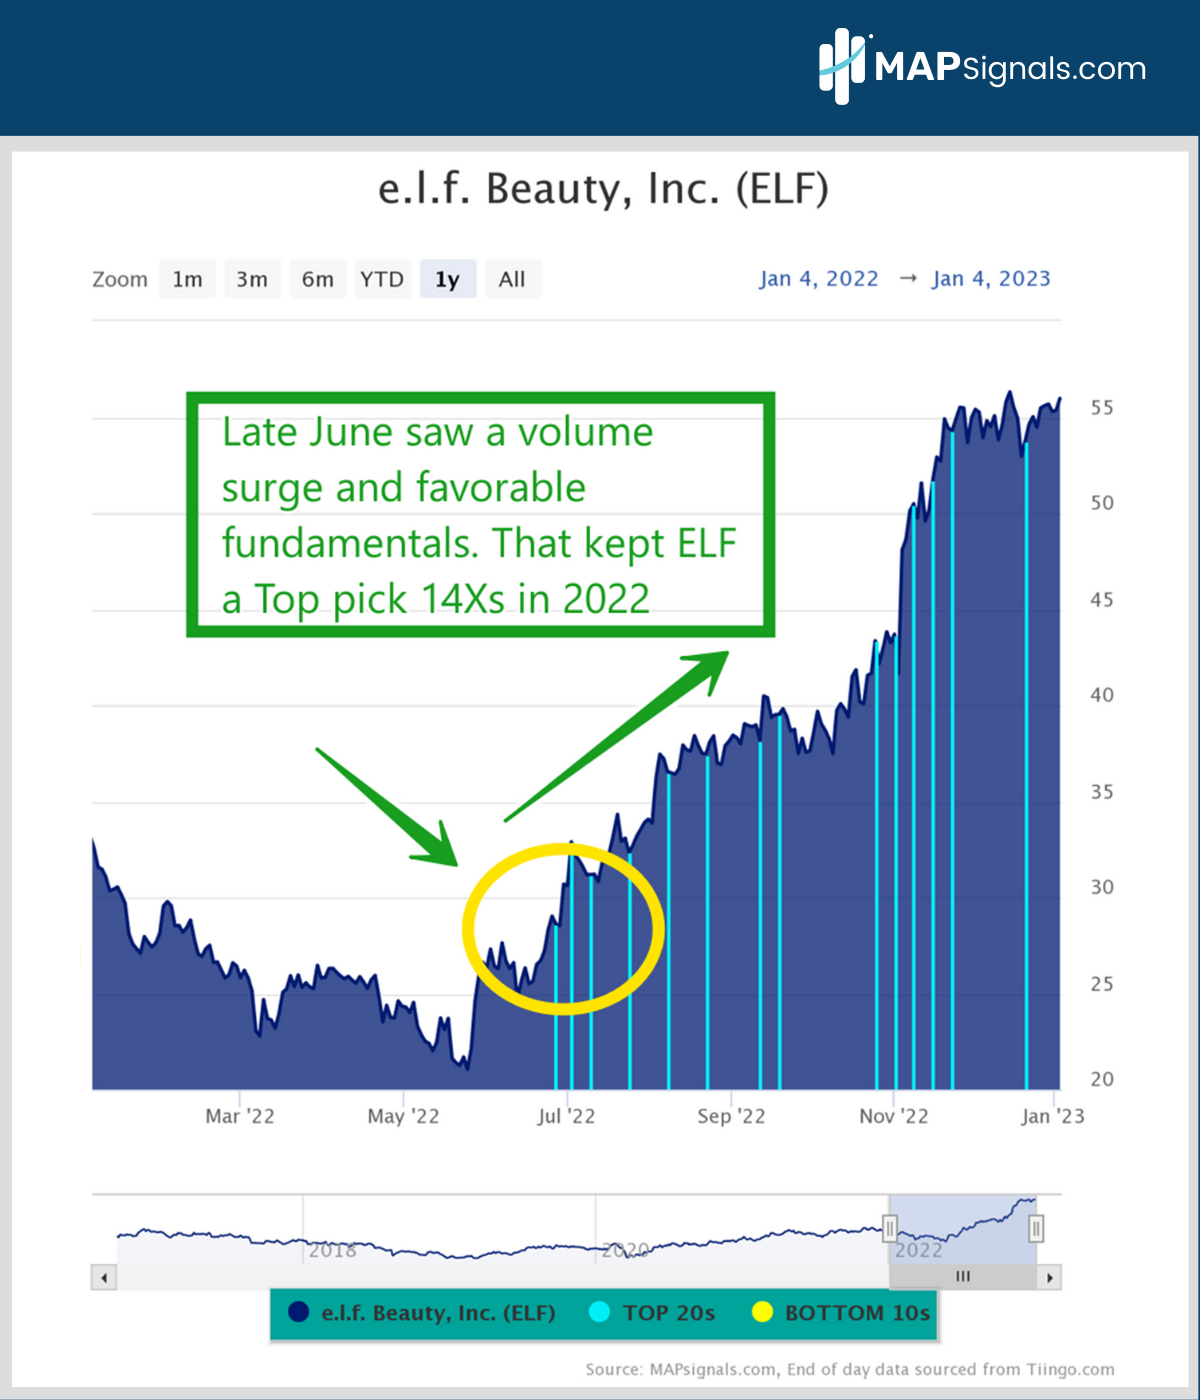 e.l.f. Beauty, Inc. (ELF) | MAPsignals Top 20